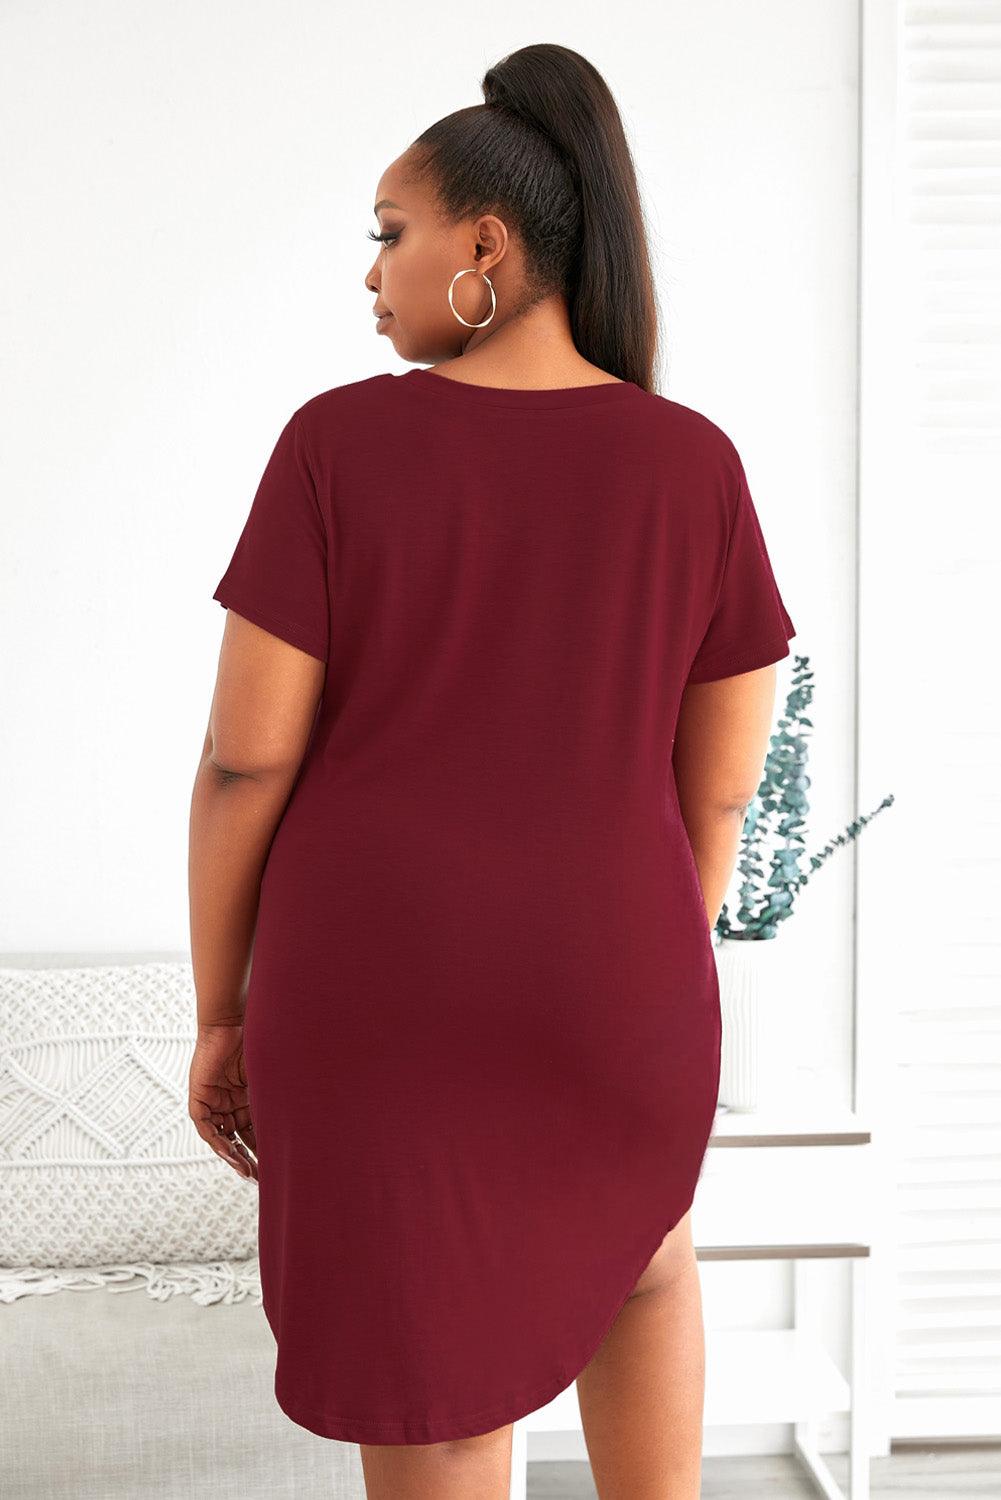 Plus Size LET ME SLEEP Graphic Print Red Nightwear Mini Dress - L & M Kee, LLC